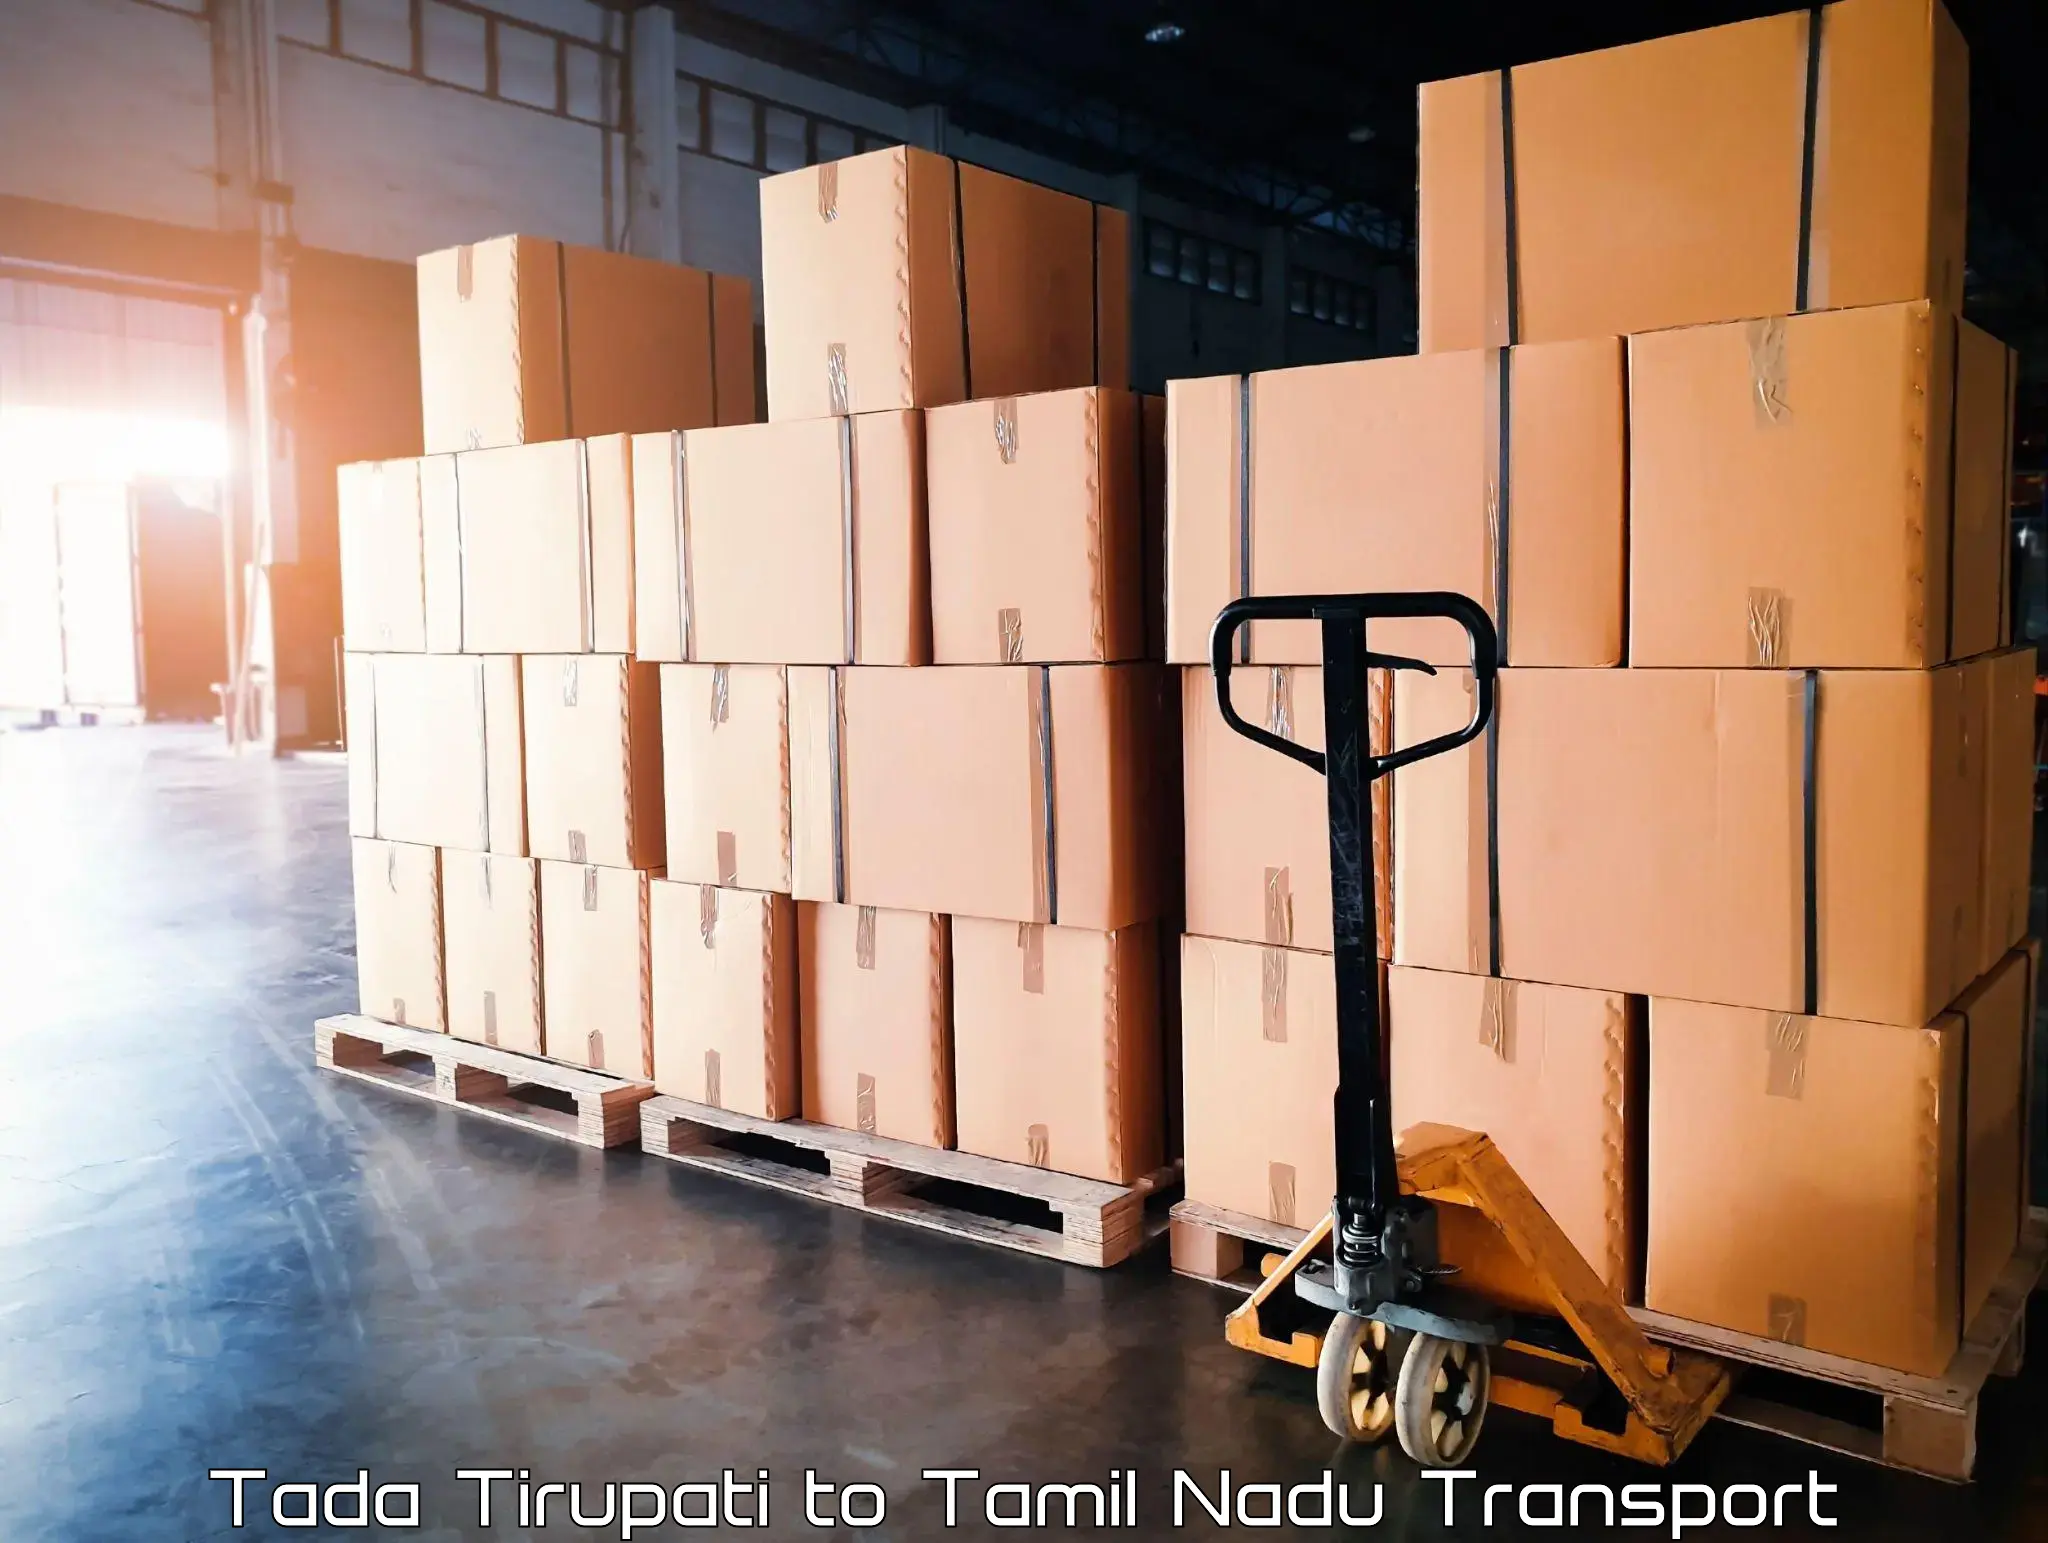 All India transport service Tada Tirupati to Tamil Nadu